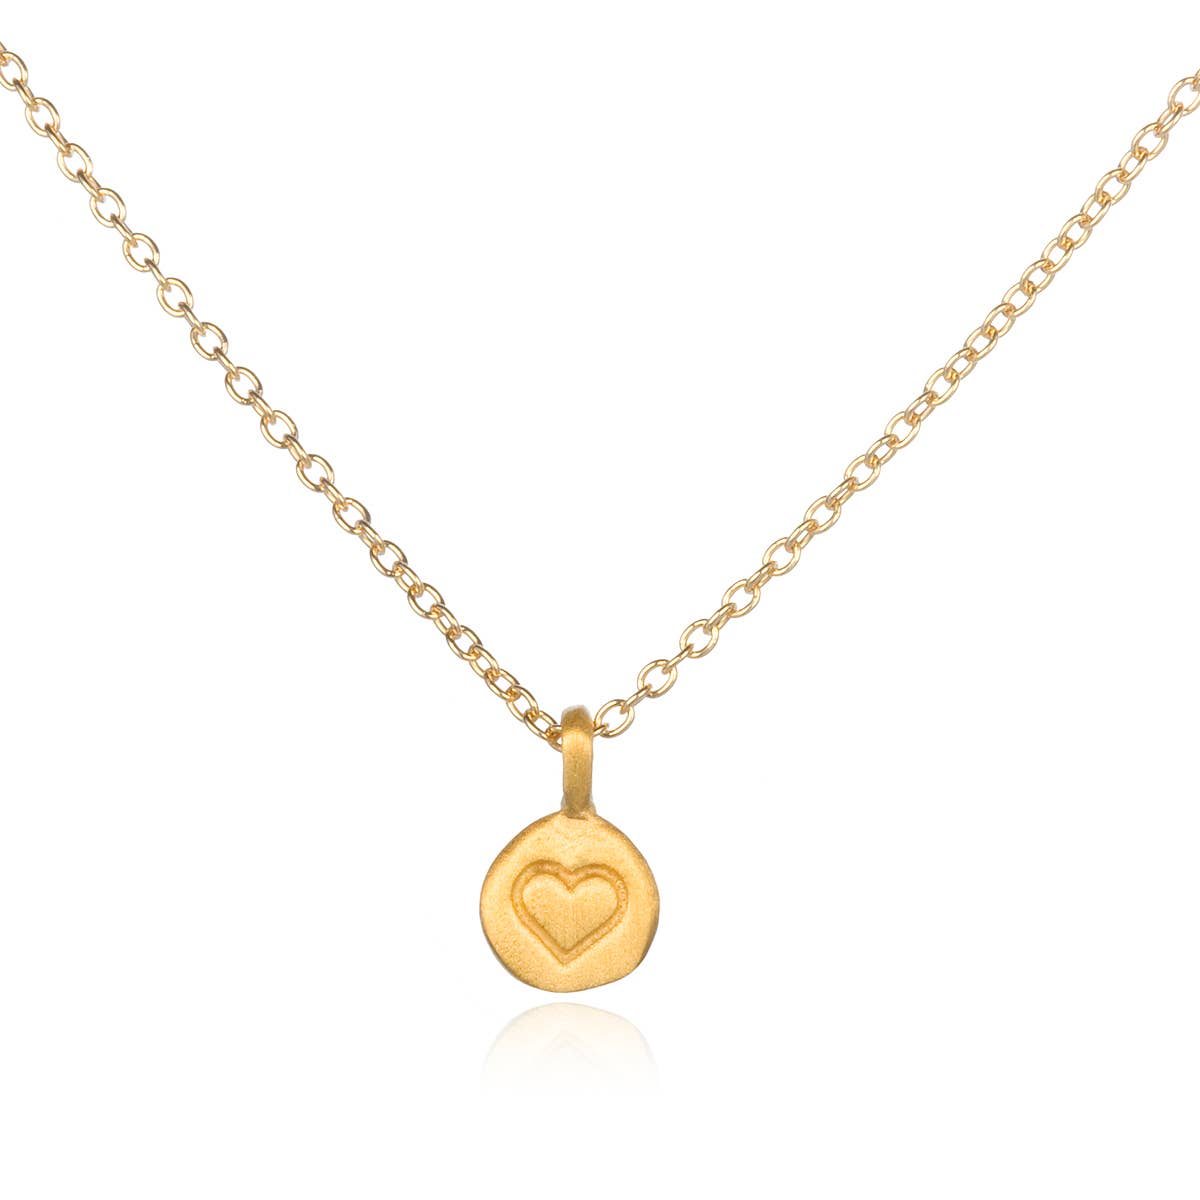 Gold Mini Heart Necklace - Abigail Fox Designs